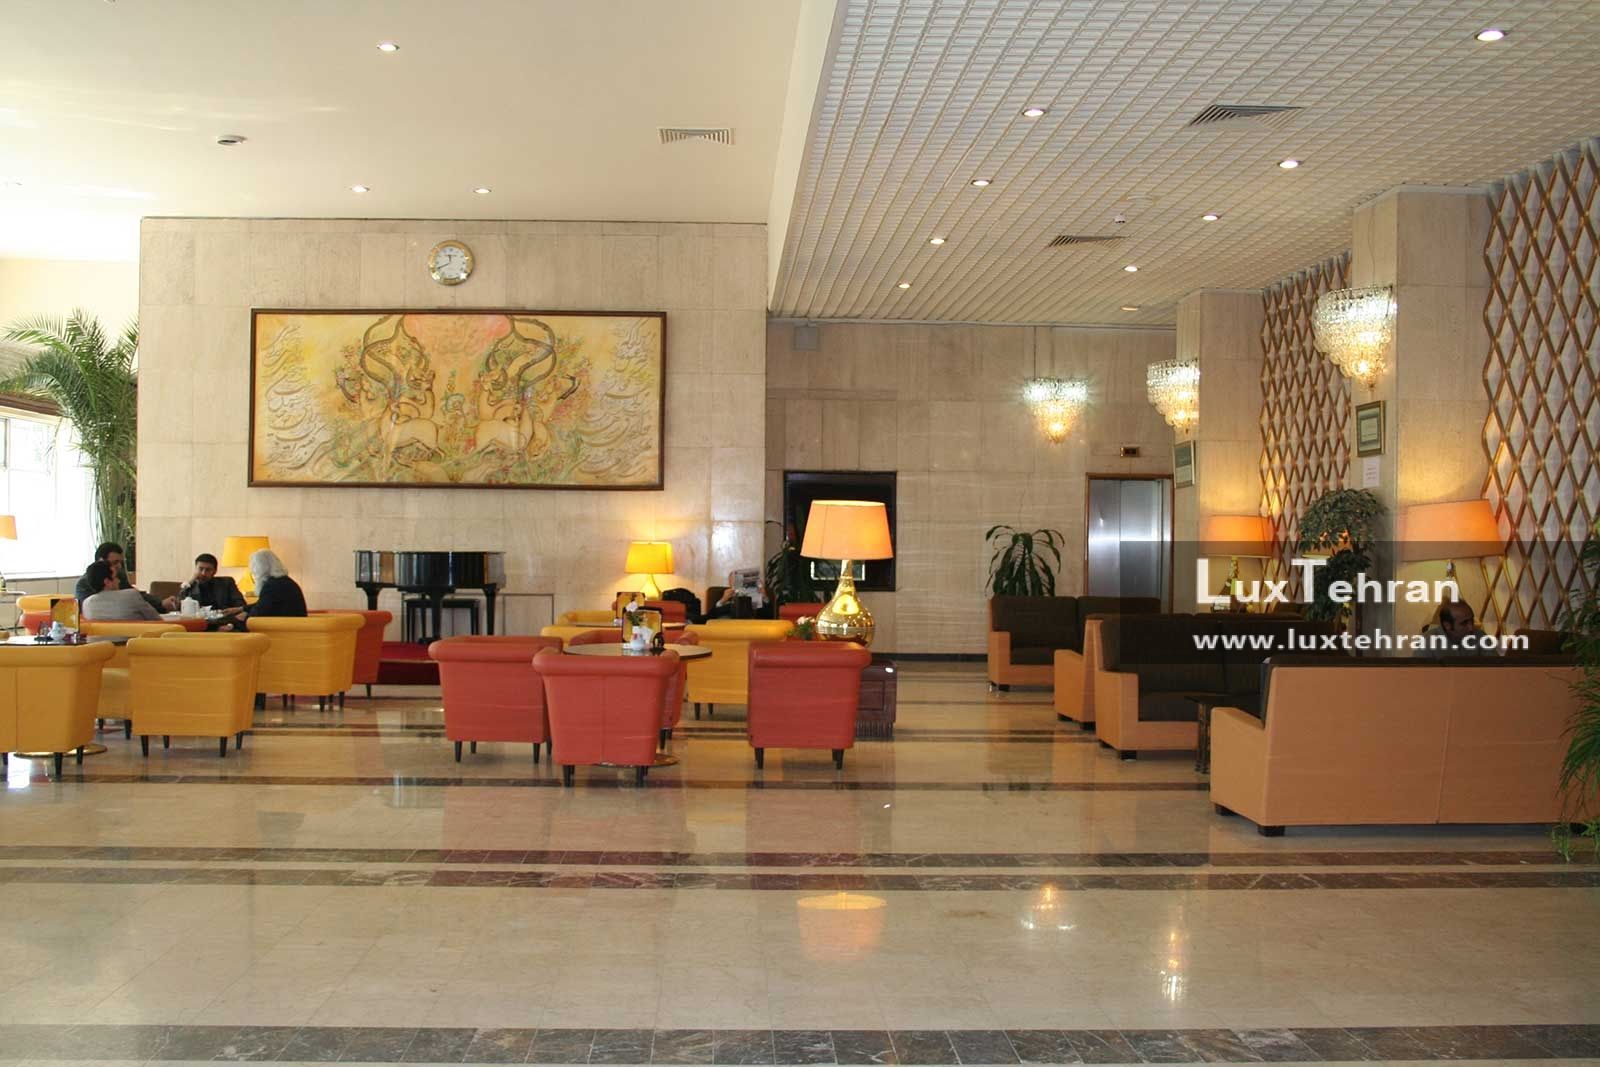 تصویری از کافی شاپ هتل بین المللی پارسیان استقلال تهران که با مبلمان ایتال فوم تزیین شده است